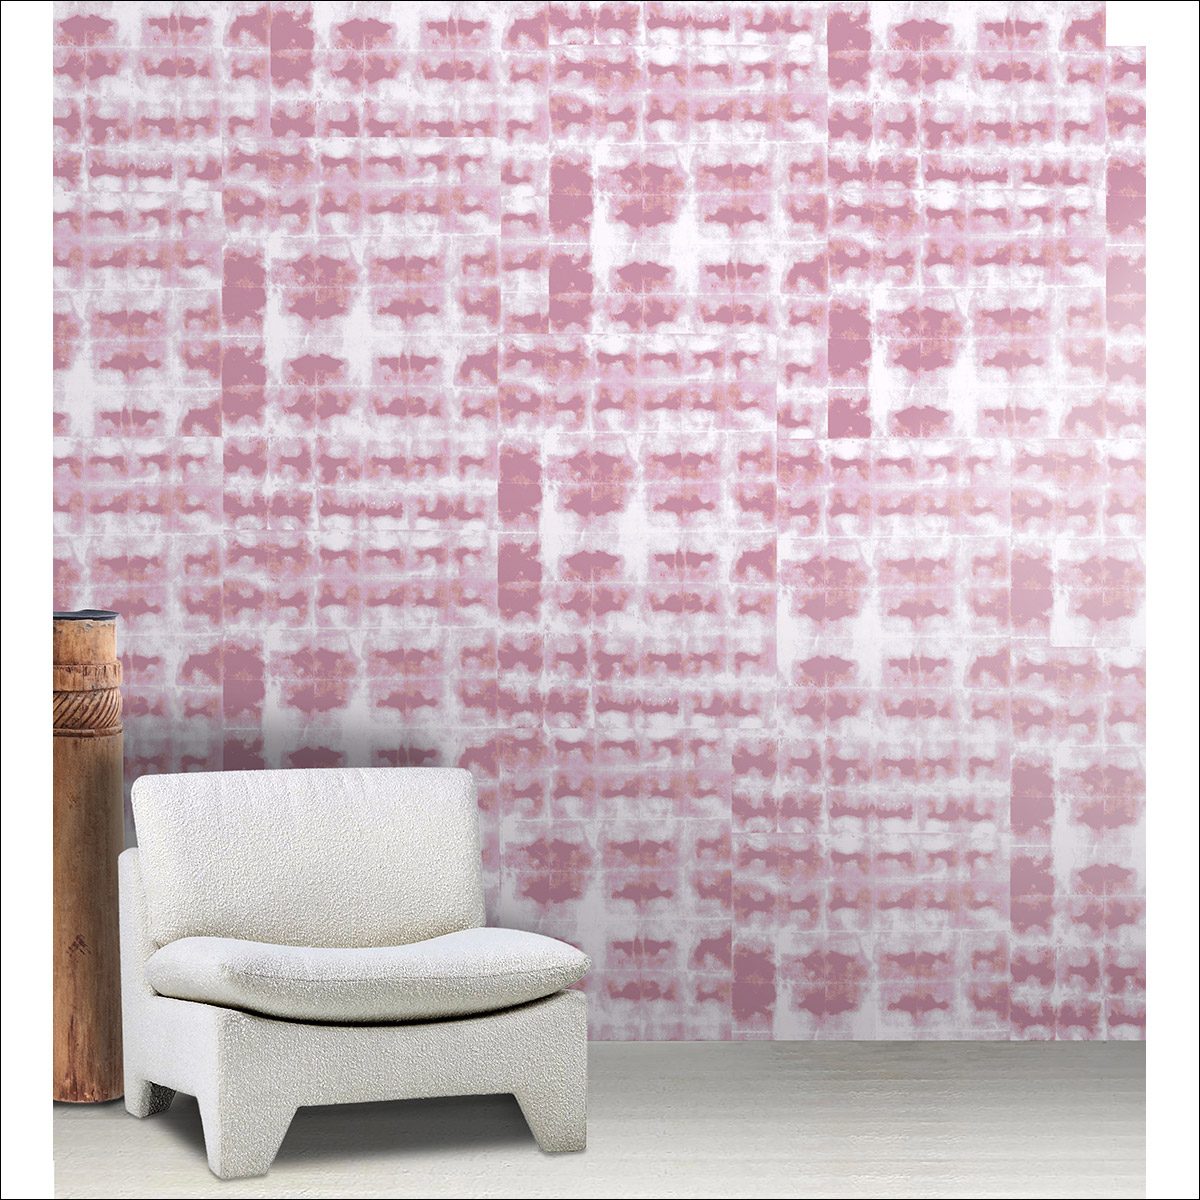 6D-Wabi-Rose-poudre-Scene2-Laur-Meyrieux-papierpeint-wallpaper